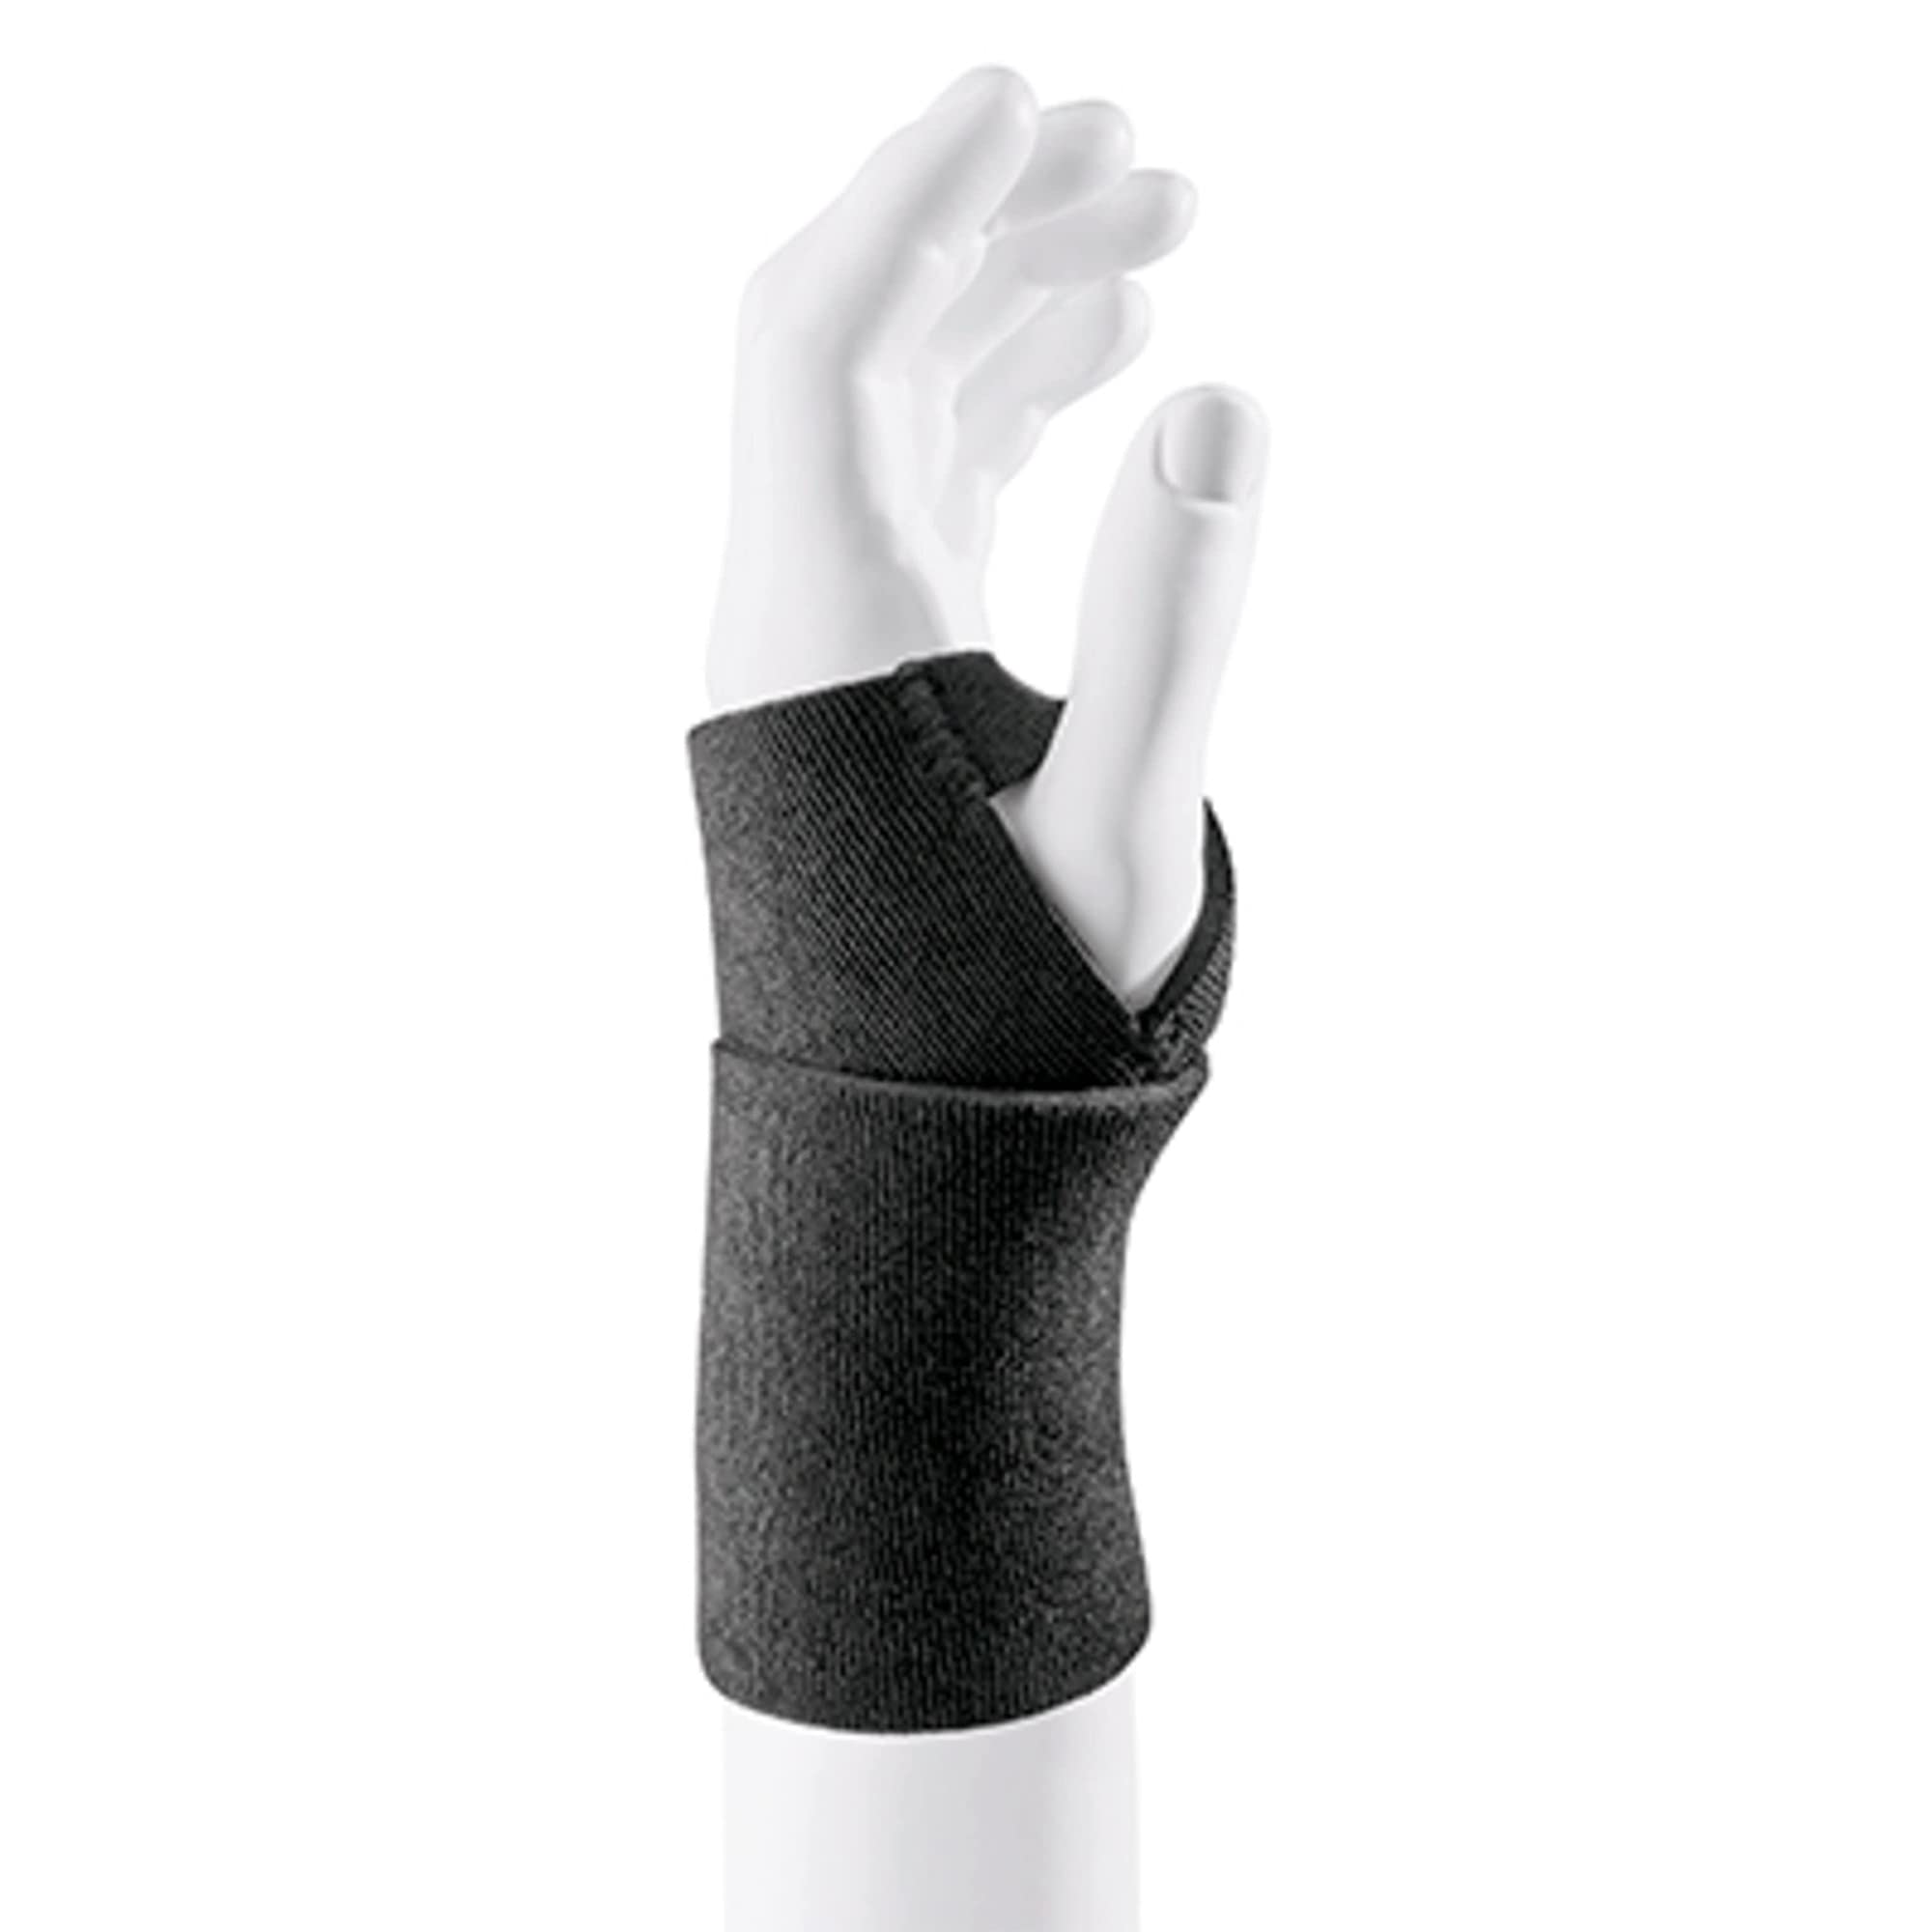 FUTURO Sport Wrist Support Adjustable 1ea (Pack of 3)